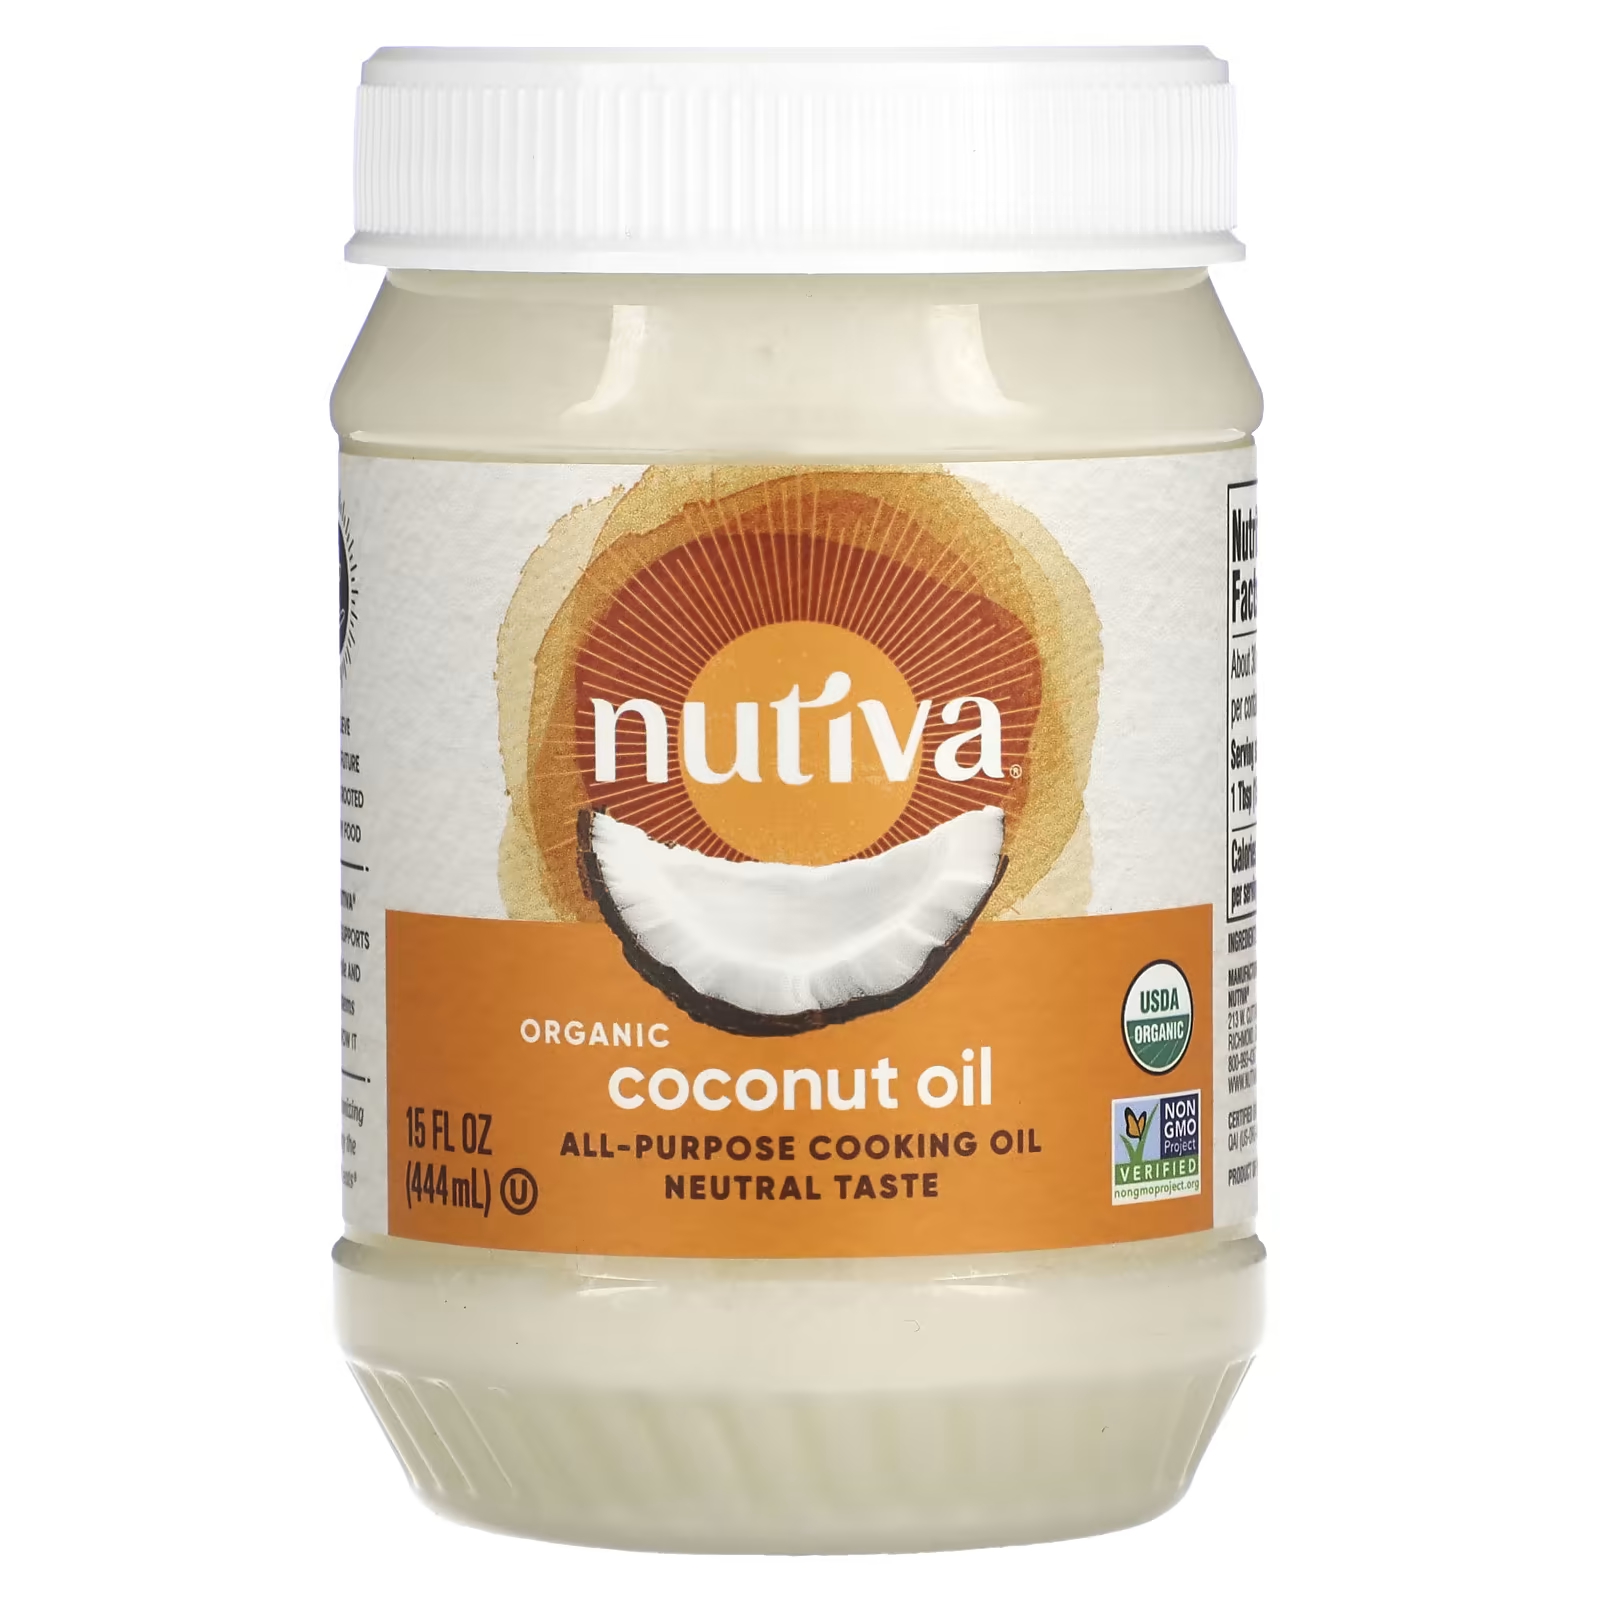 Универсальное кулинарное масло, органическое кокосовое масло, 15 жидких унций (444 мл) Nutiva nutiva органическое кокосовое масло virgin 23 жидкие унции 680 мл